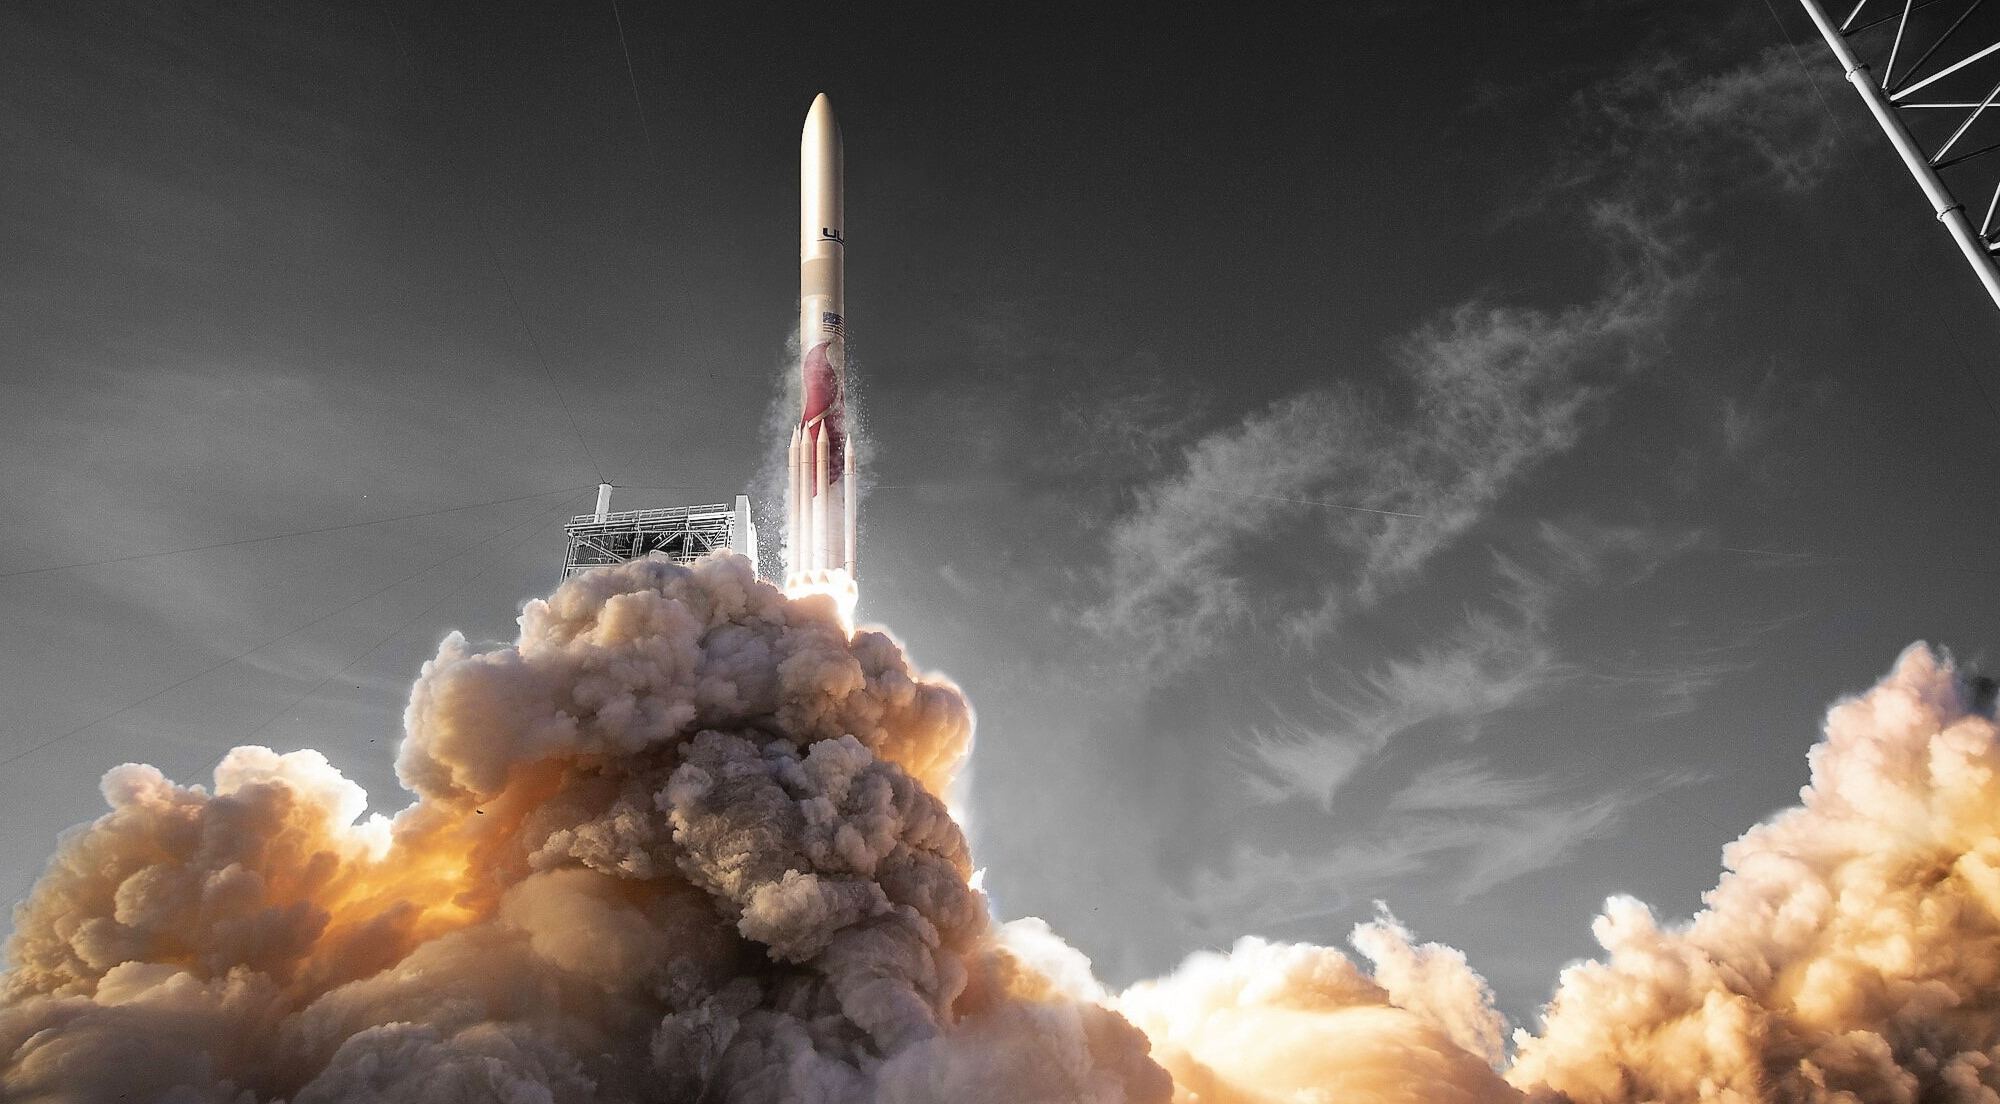 Illustration: Vulcan Centaur rocket launch